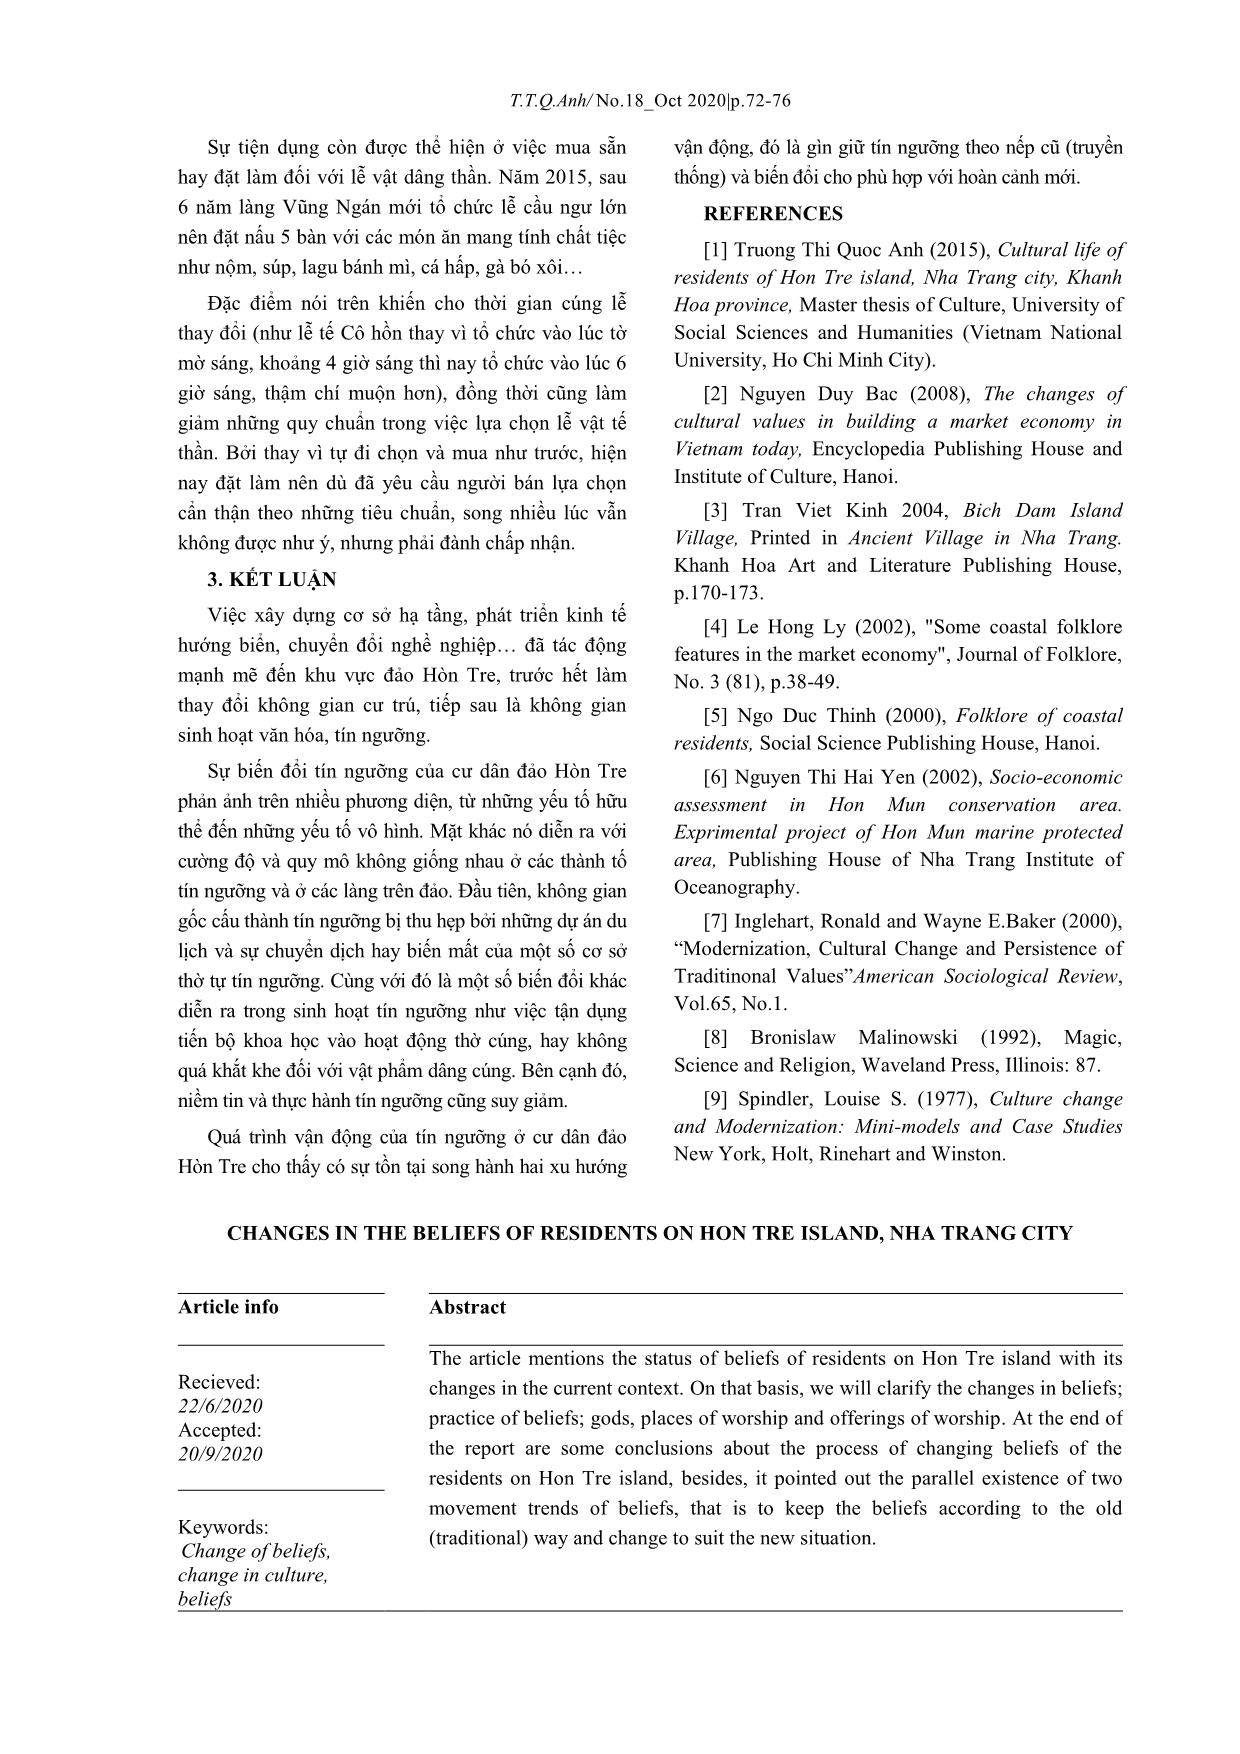 Biến đổi trong tín ngưỡng của cư dân đảo Hòn Tre, thành phố Nha Trang trang 5